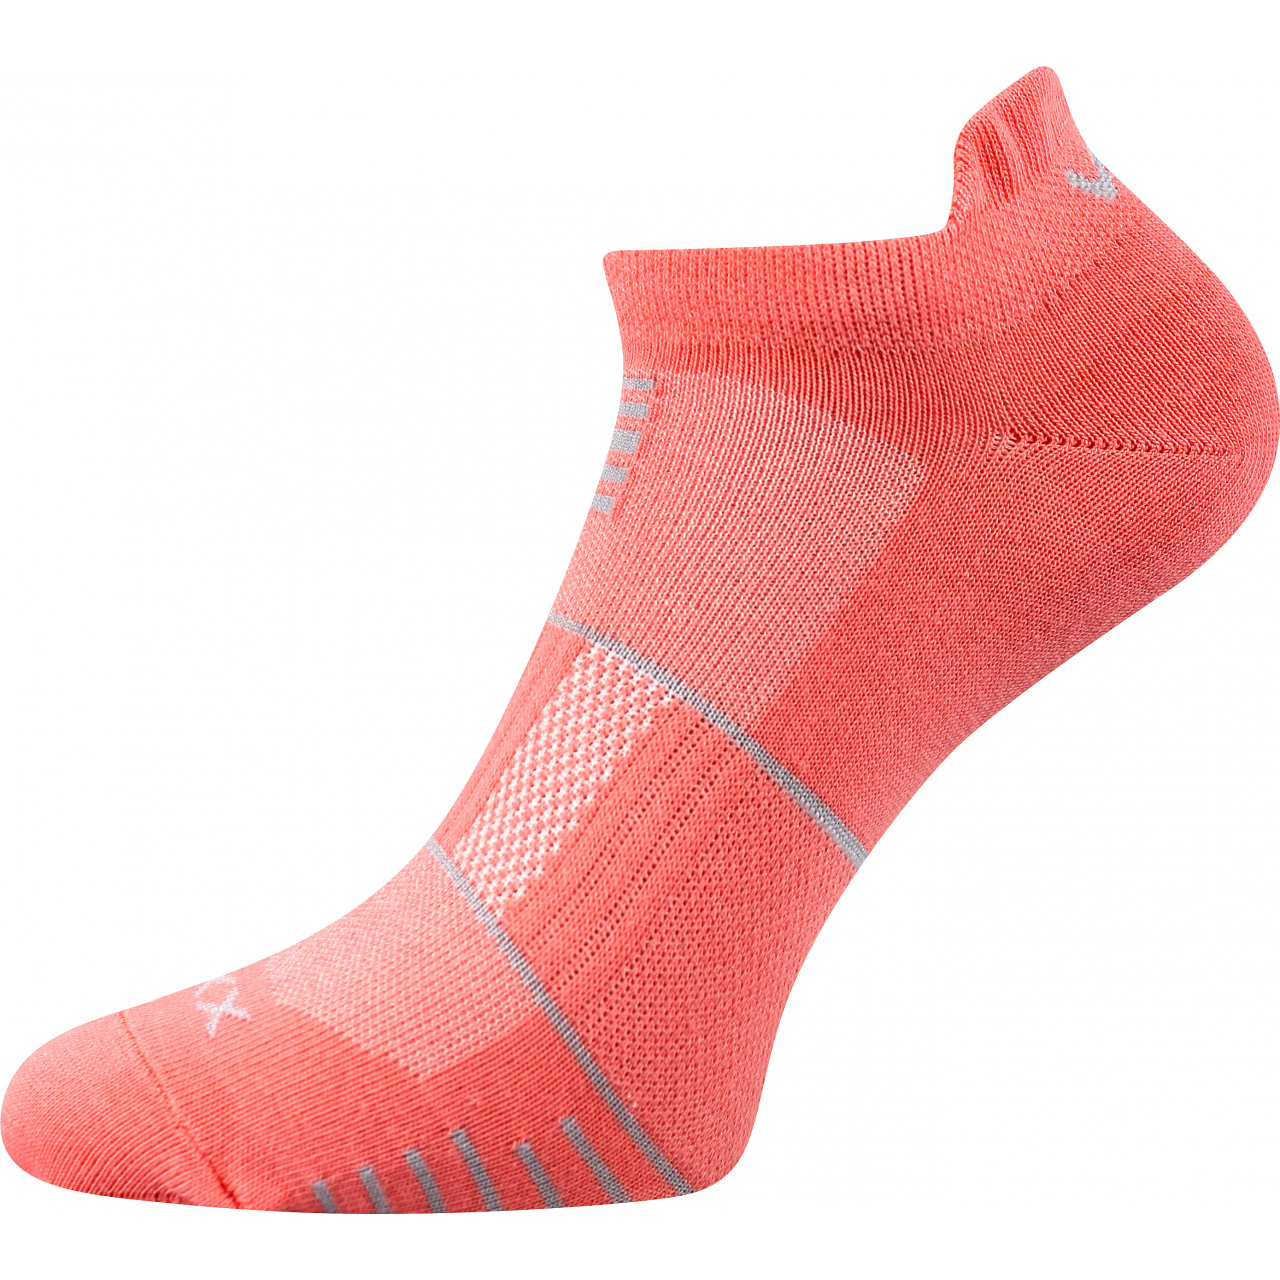 Ponožky sportovní unisex Voxx Avenar - oranžové, 35-38